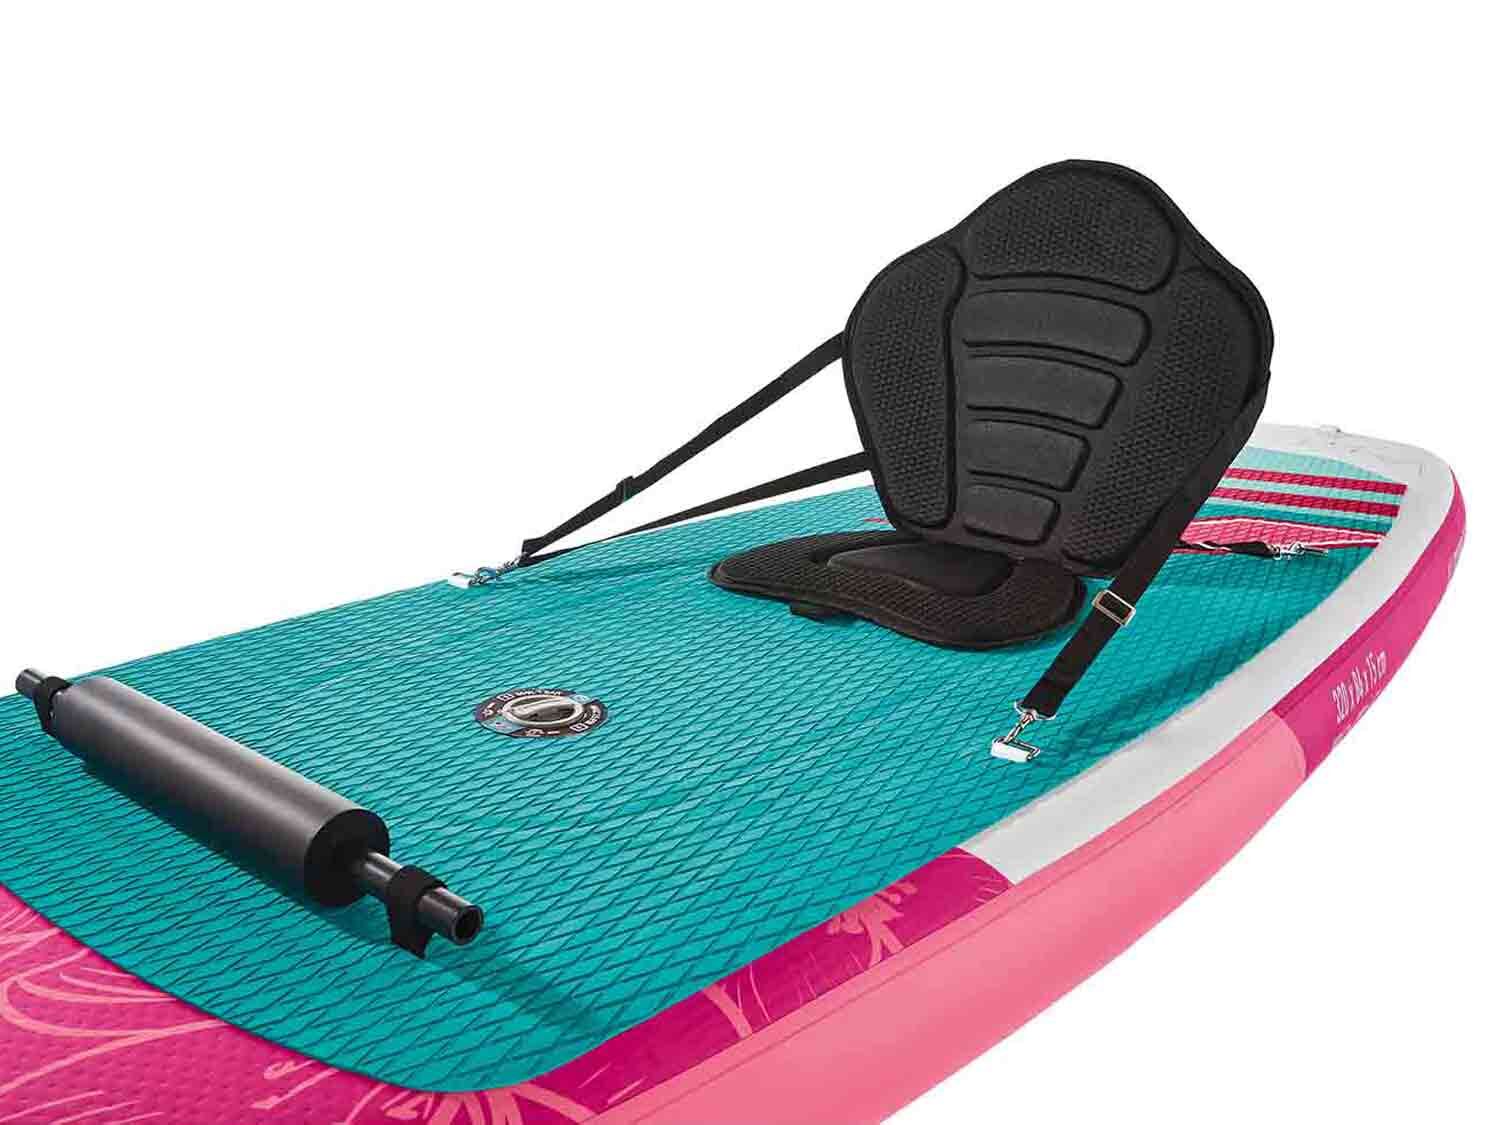  F2 Tabla inflable de paddle surf con estampado